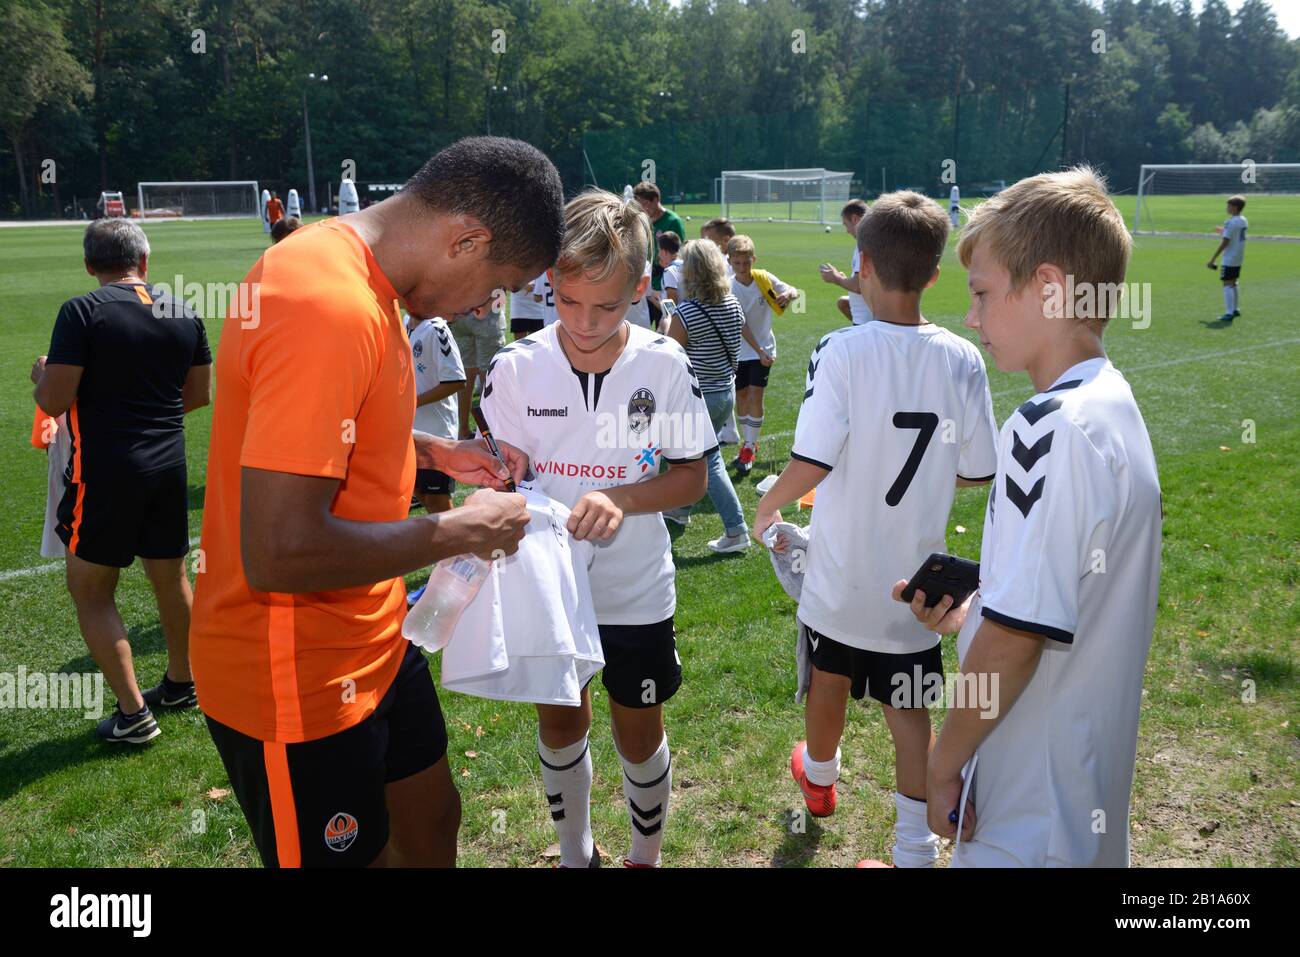 Fußballspieler Dodo, Shakhtar-Fußballmannschaft, die Autogramme für Kinder signiert. August 2019. Kiew, Ukraine Stockfoto